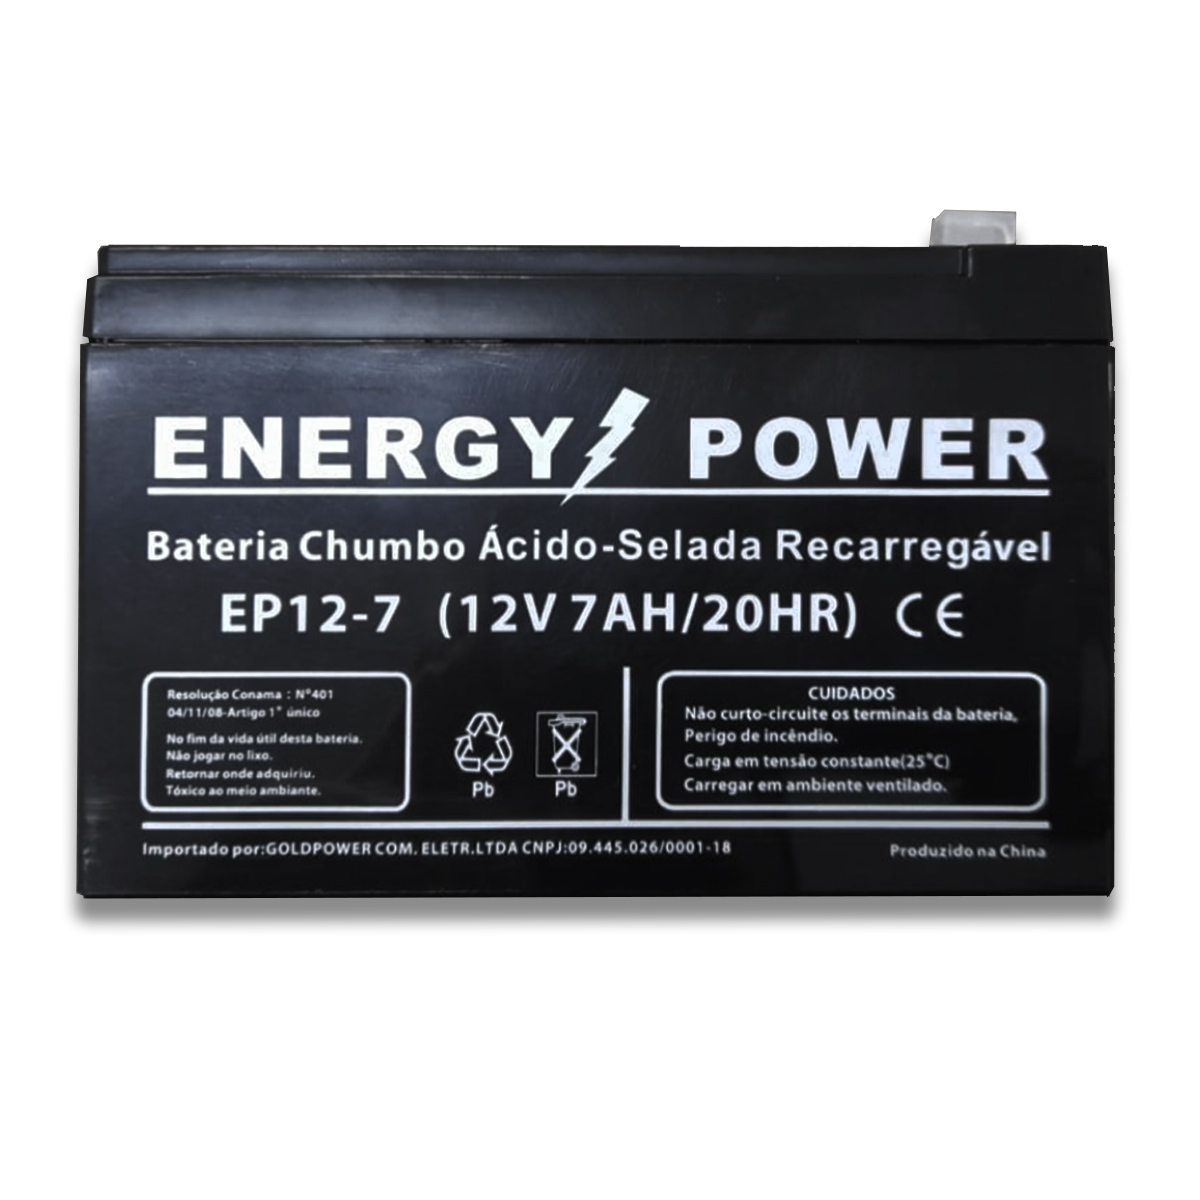 BATERIA ESTACIONARIA 12V X 7AH ENERGY POWER